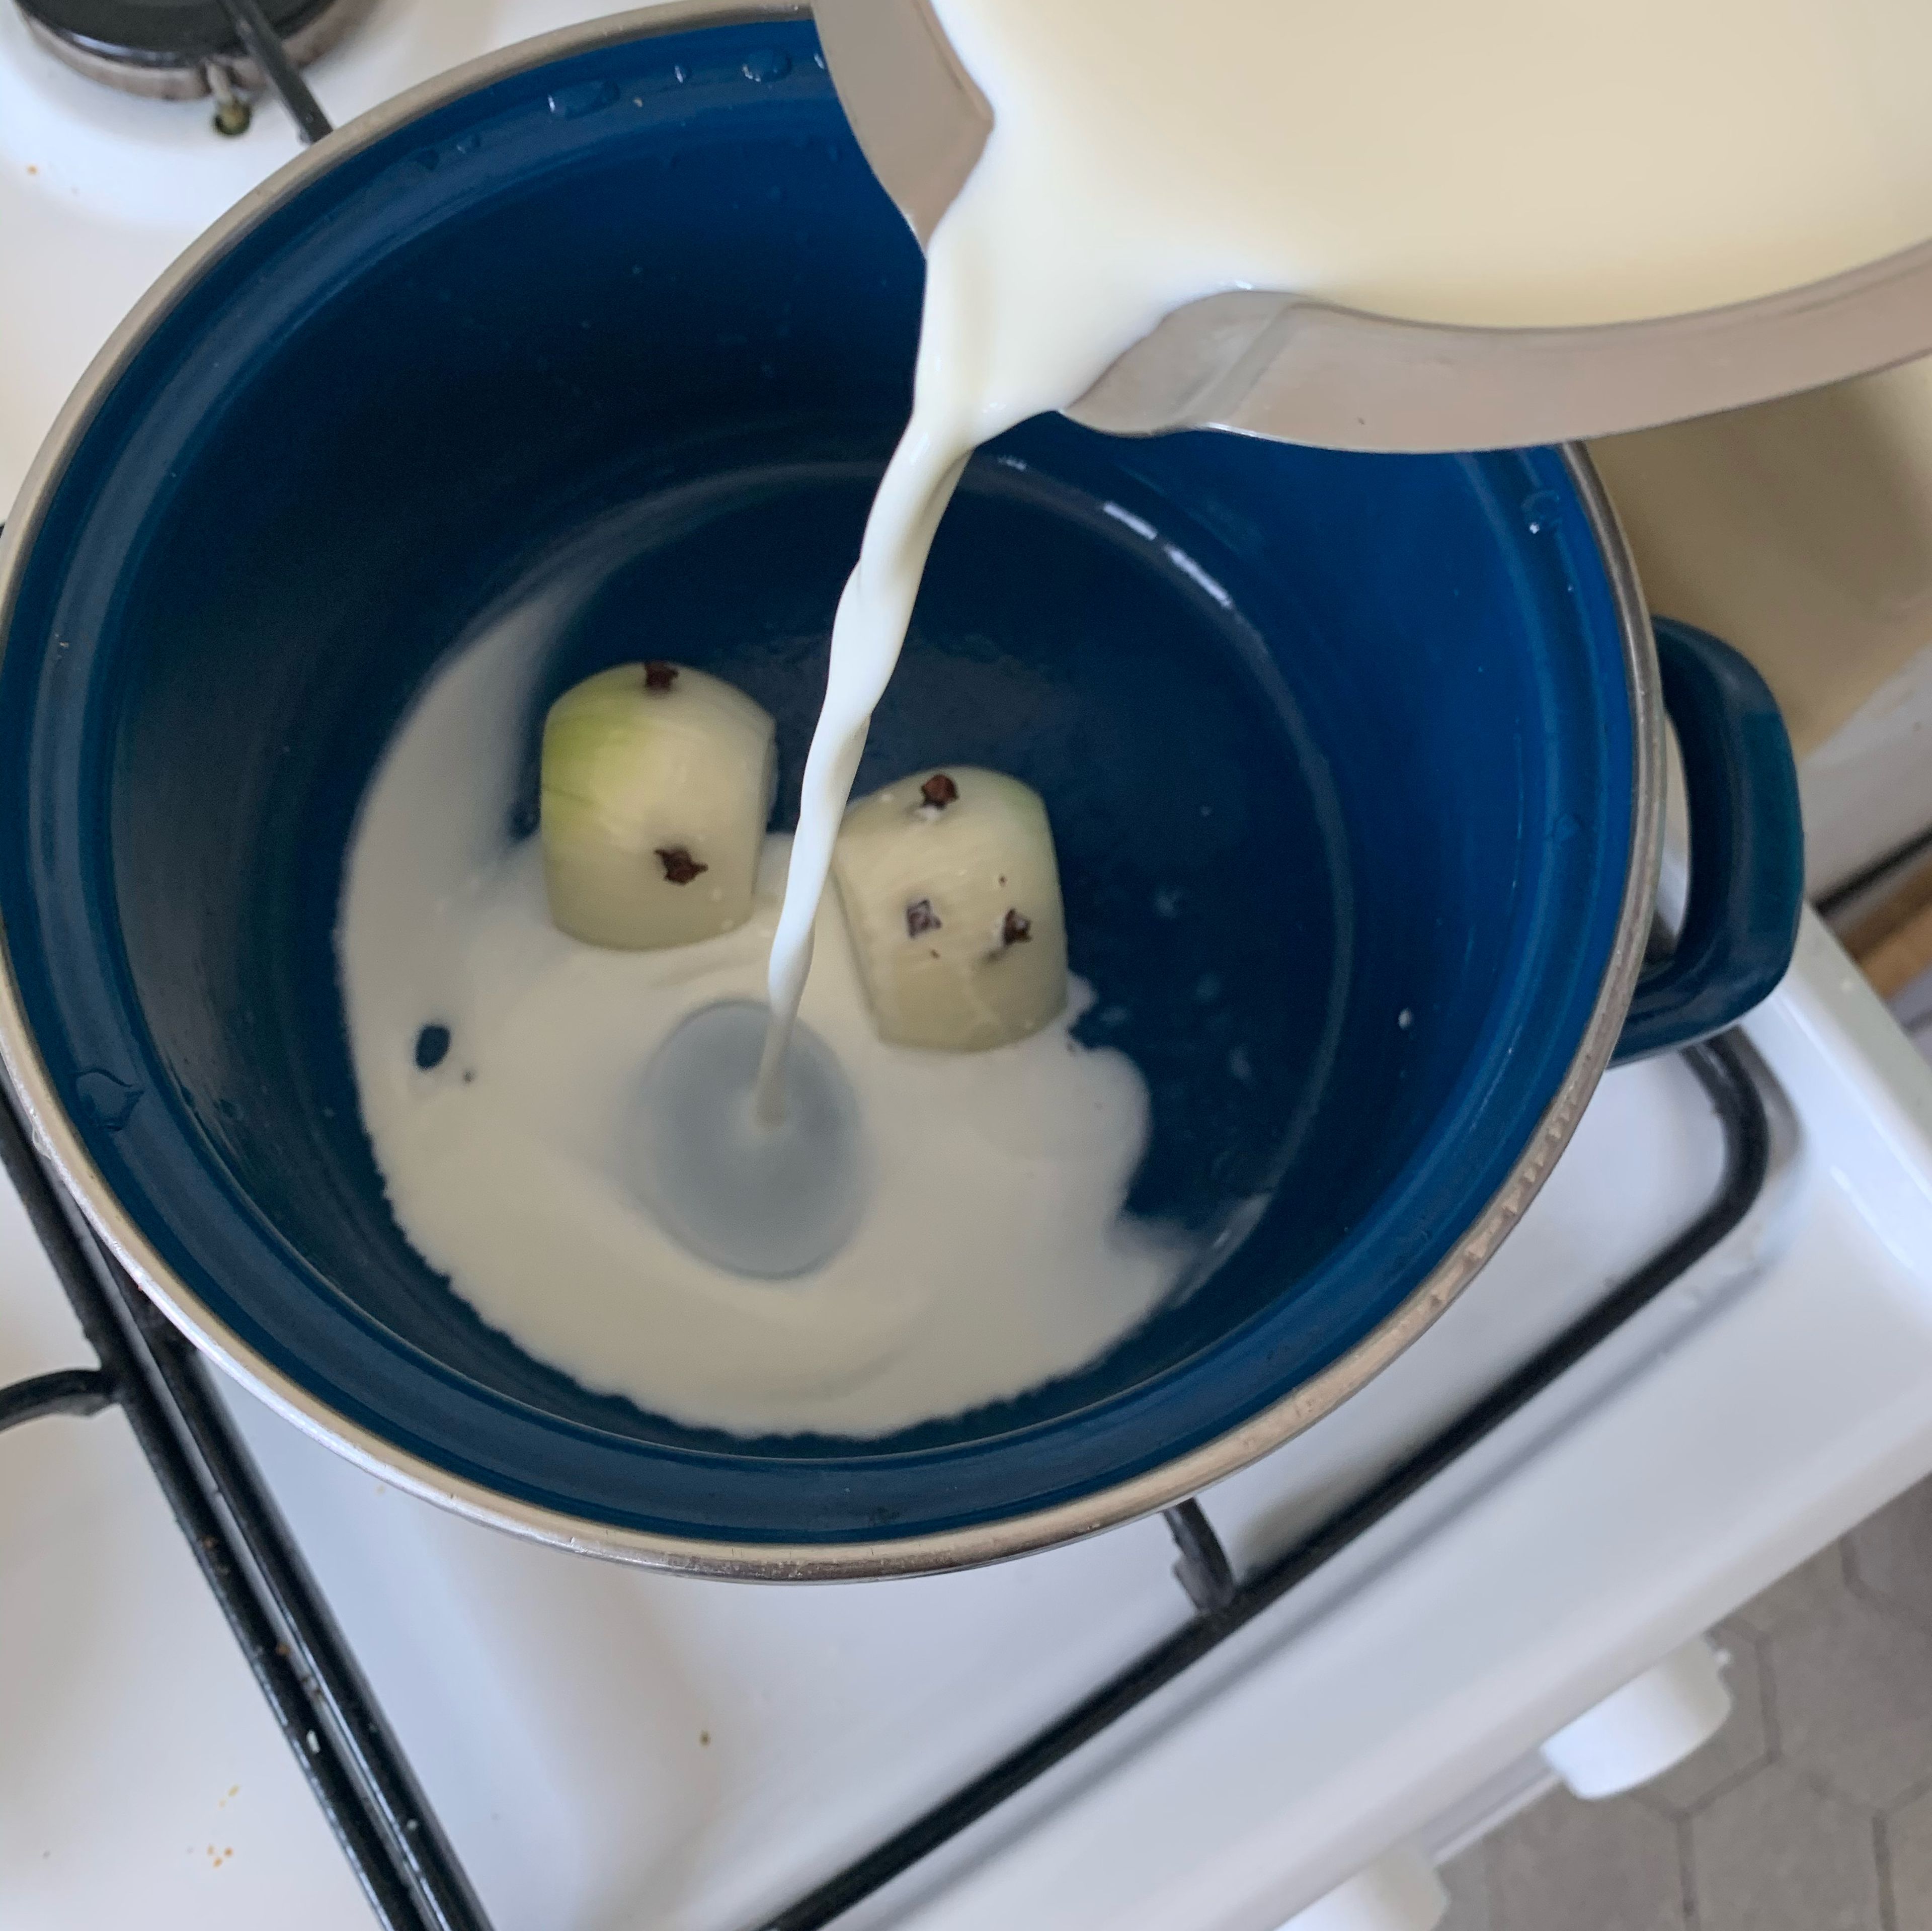 Eine kleine oder eine halbe Zwiebel schälen und mit Nelken spicken. Die Milch mit der gespickten Zwiebel aufkochen und neben der Kochstelle 10 Minuten ziehen lassen. Anschliessend die Zwiebel aus der Milch nehmen.